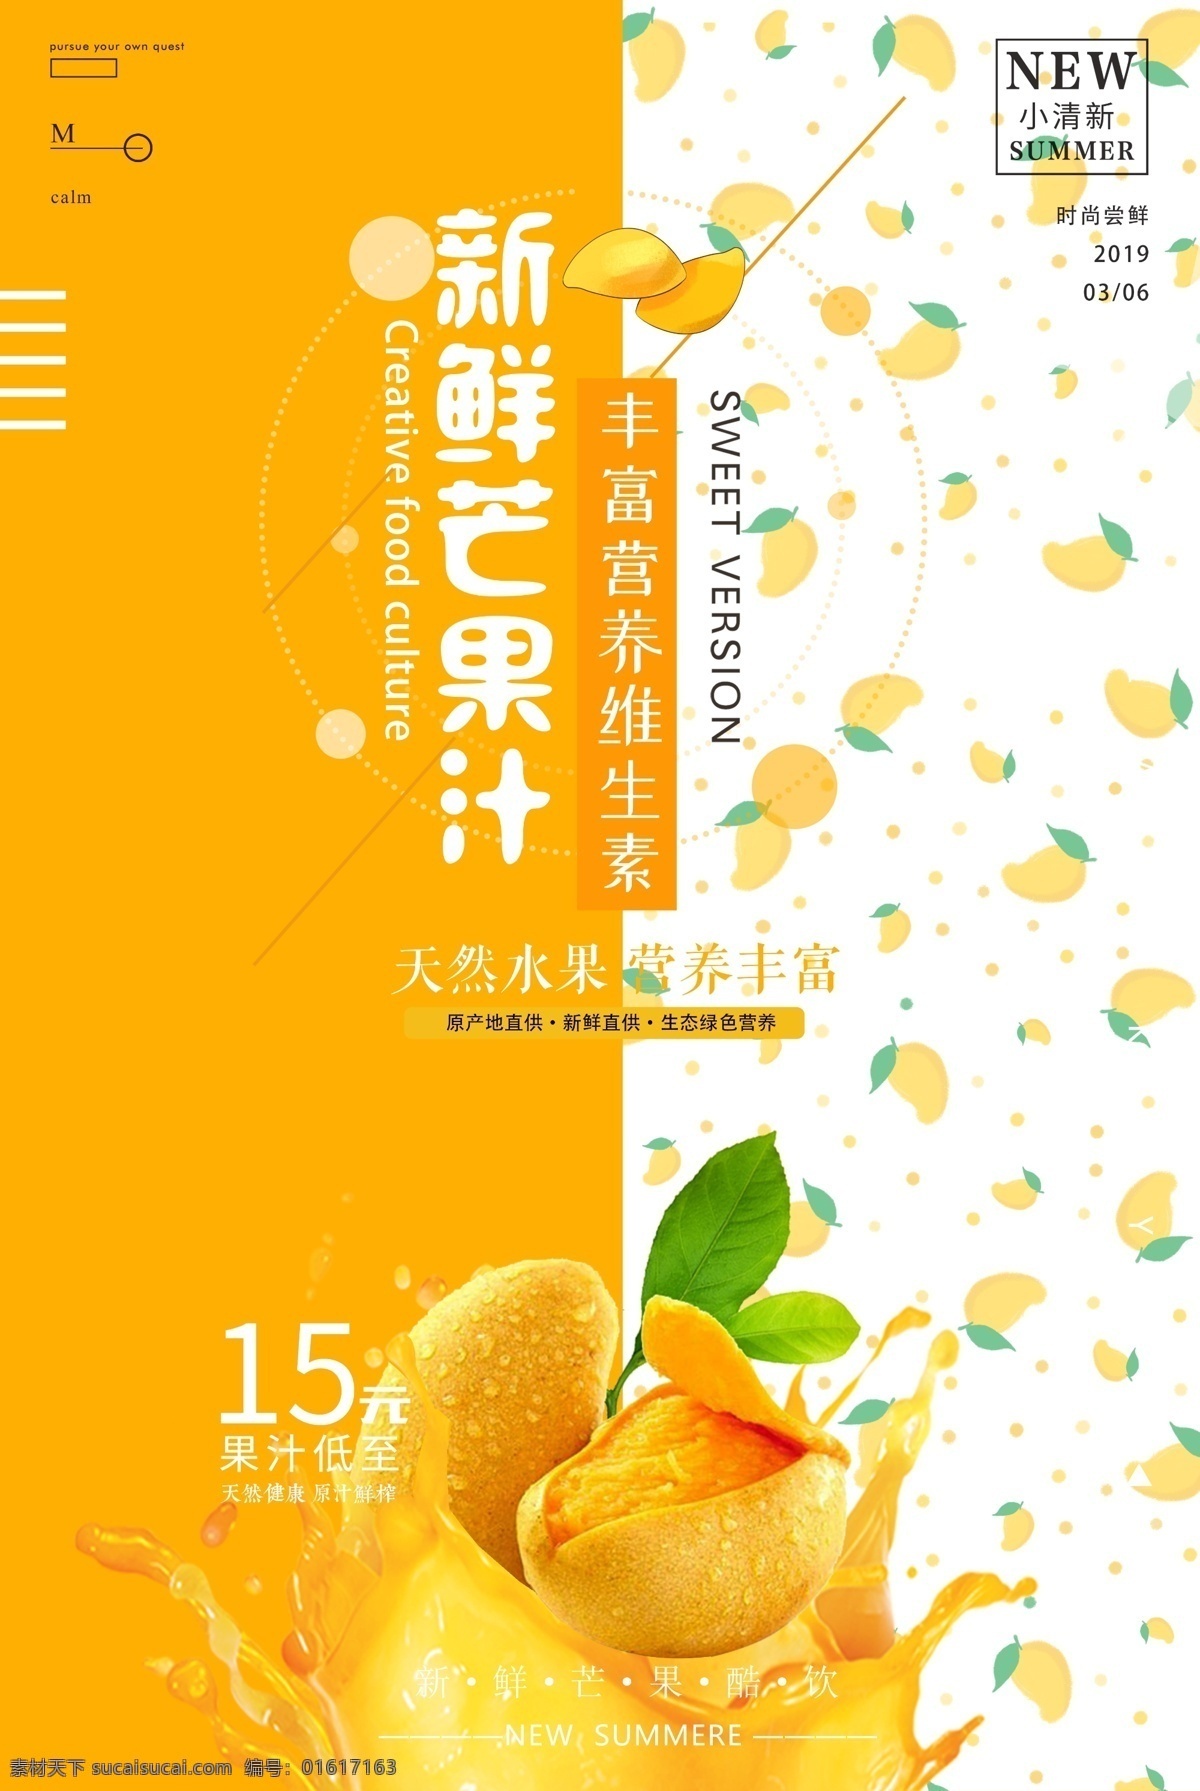 新鲜芒果汁 芒果汁 饮品 饮料 饮品店 黄色 海报 活动 促销